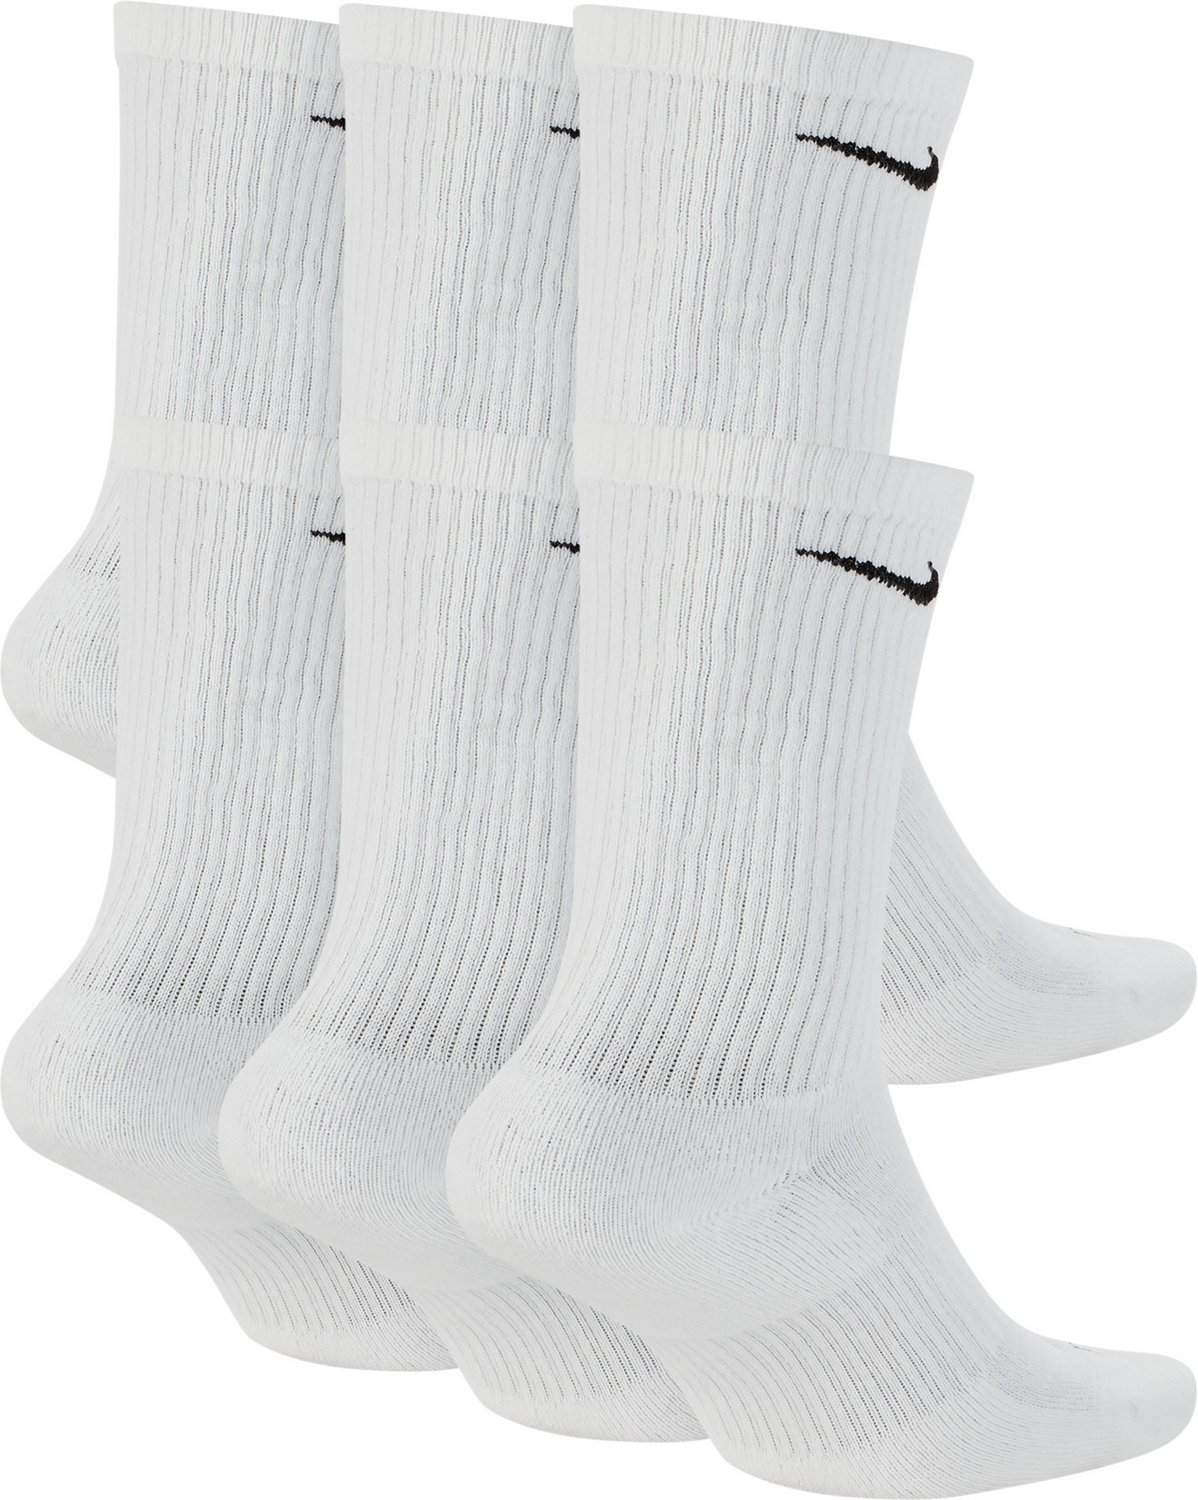 Nike Men's Everyday Plus Cushion Crew Training Socks - 6 Pairs - Hibbett